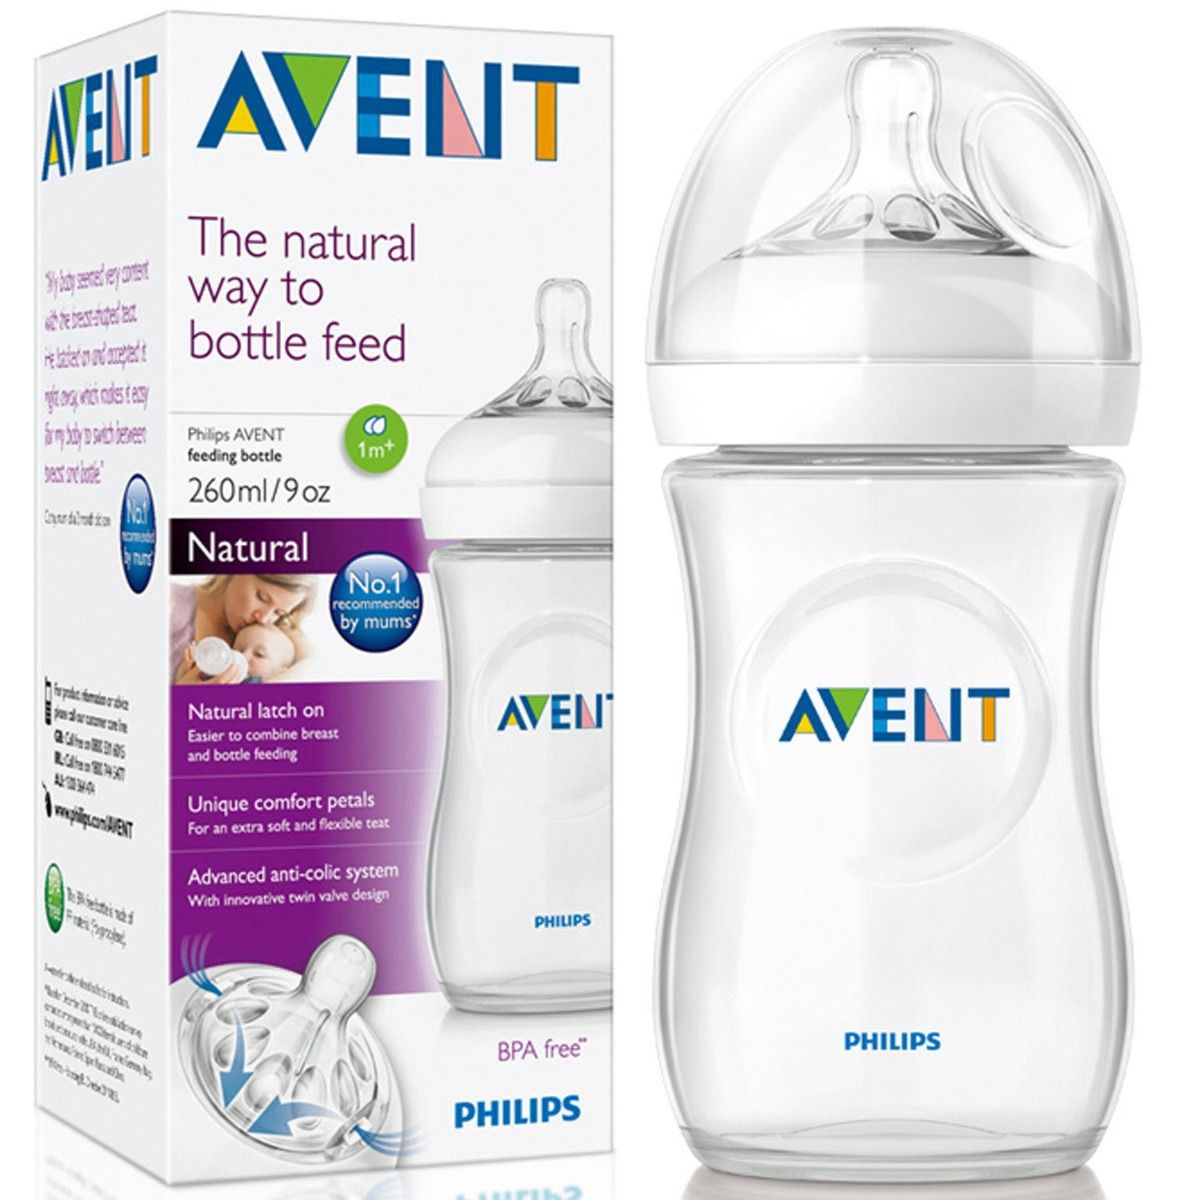 Buy Philips Avent Feeding Bottle Scf693/10, 1+Months, 260 ml Online